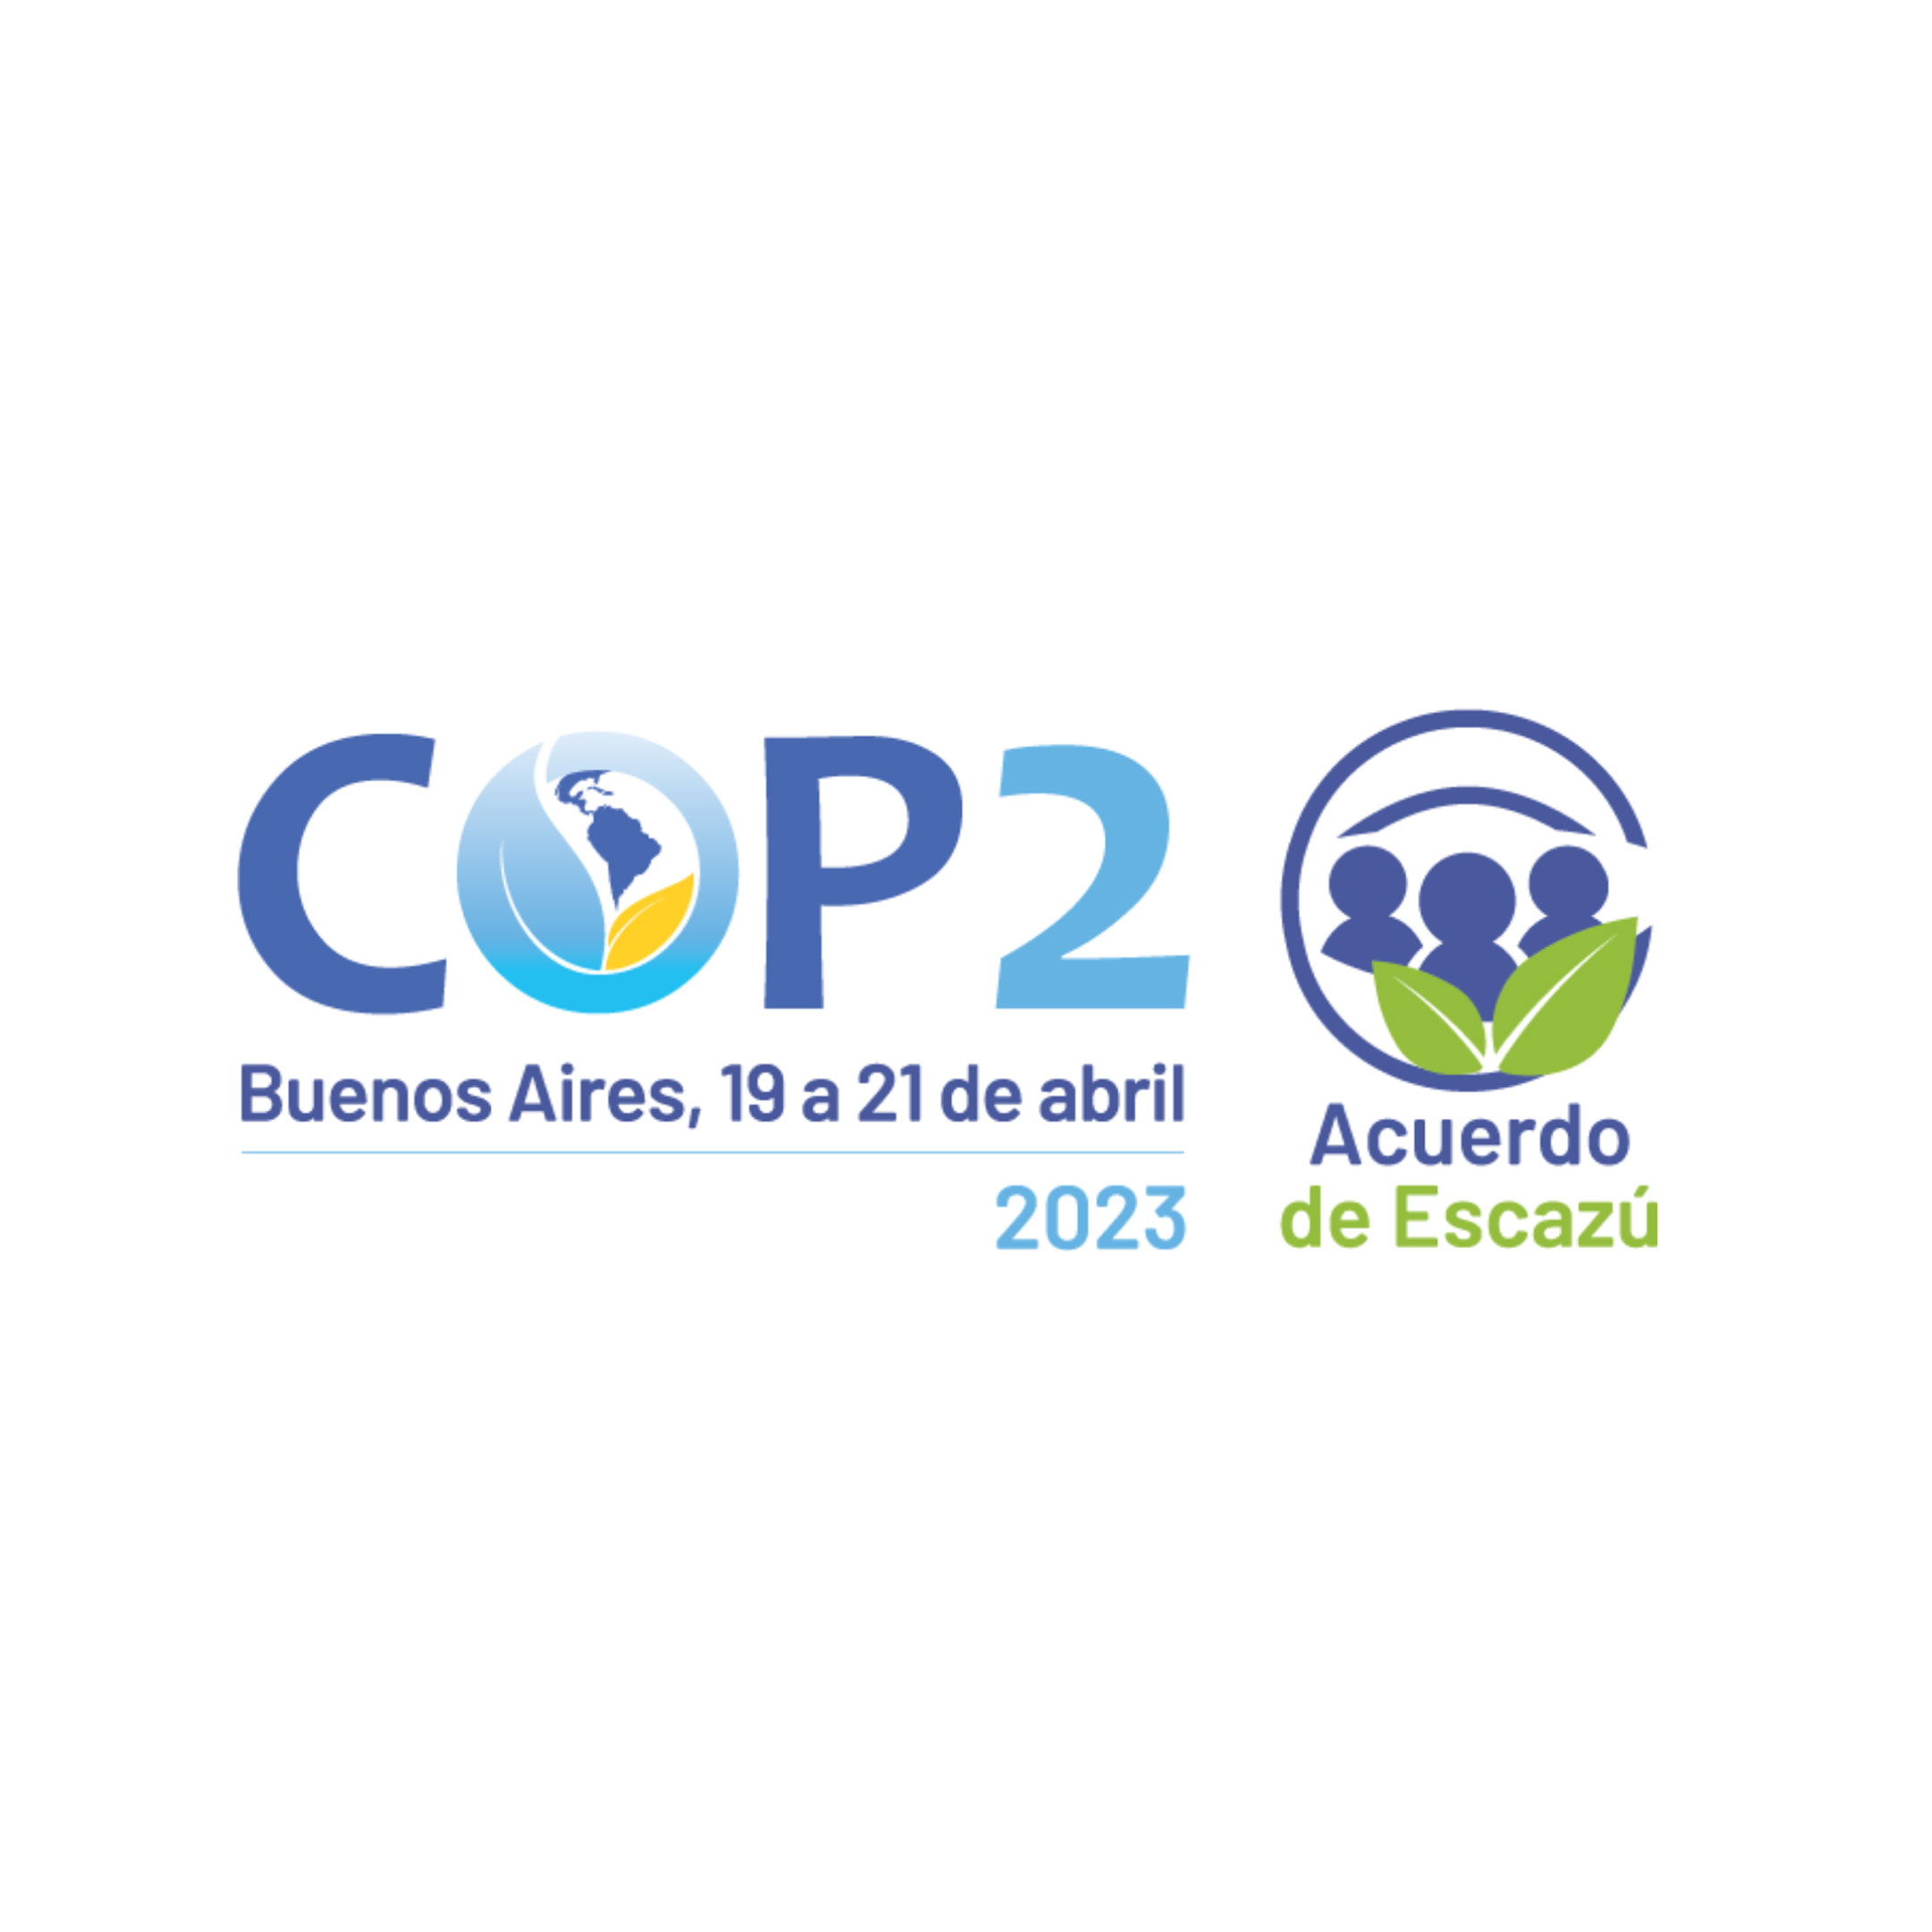 COP 2: Segunda reunión de la Conferencia de las Partes del Acuerdo de Escazú, Buenos Aires. – MMA